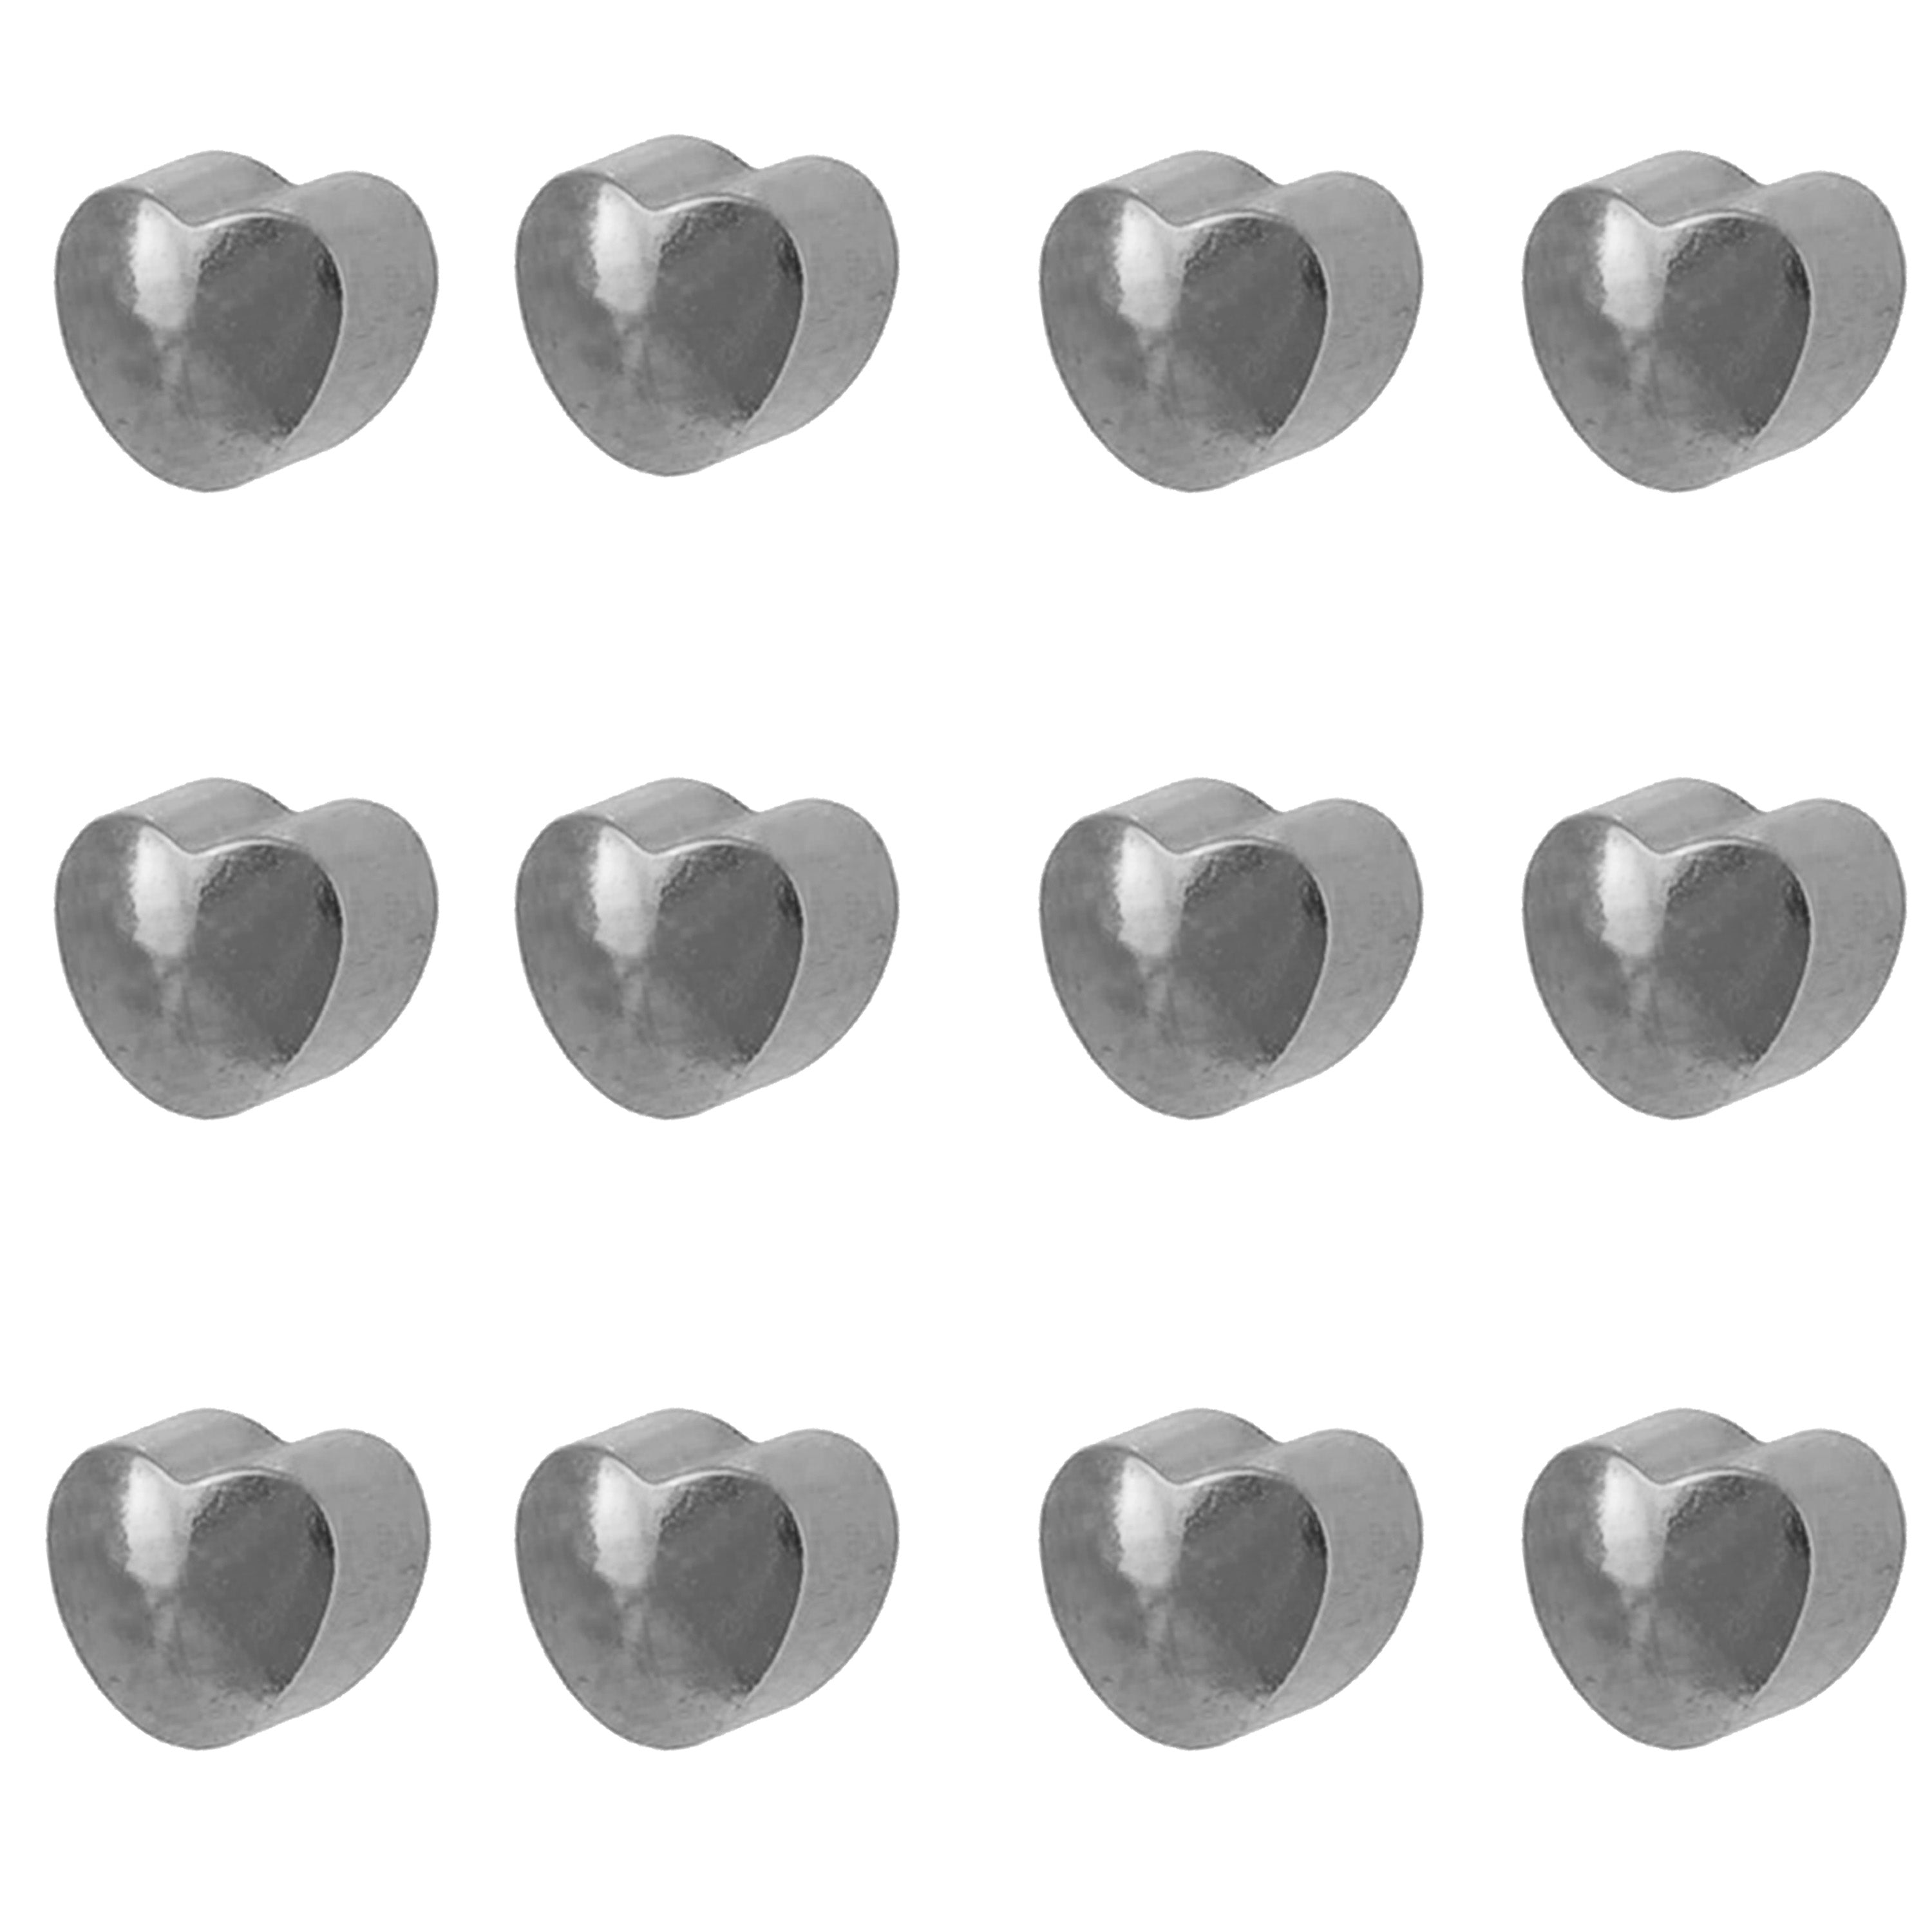 3MM Heart Allergy-free Stainless Steel Piercing Ear Stud (12 Pair)